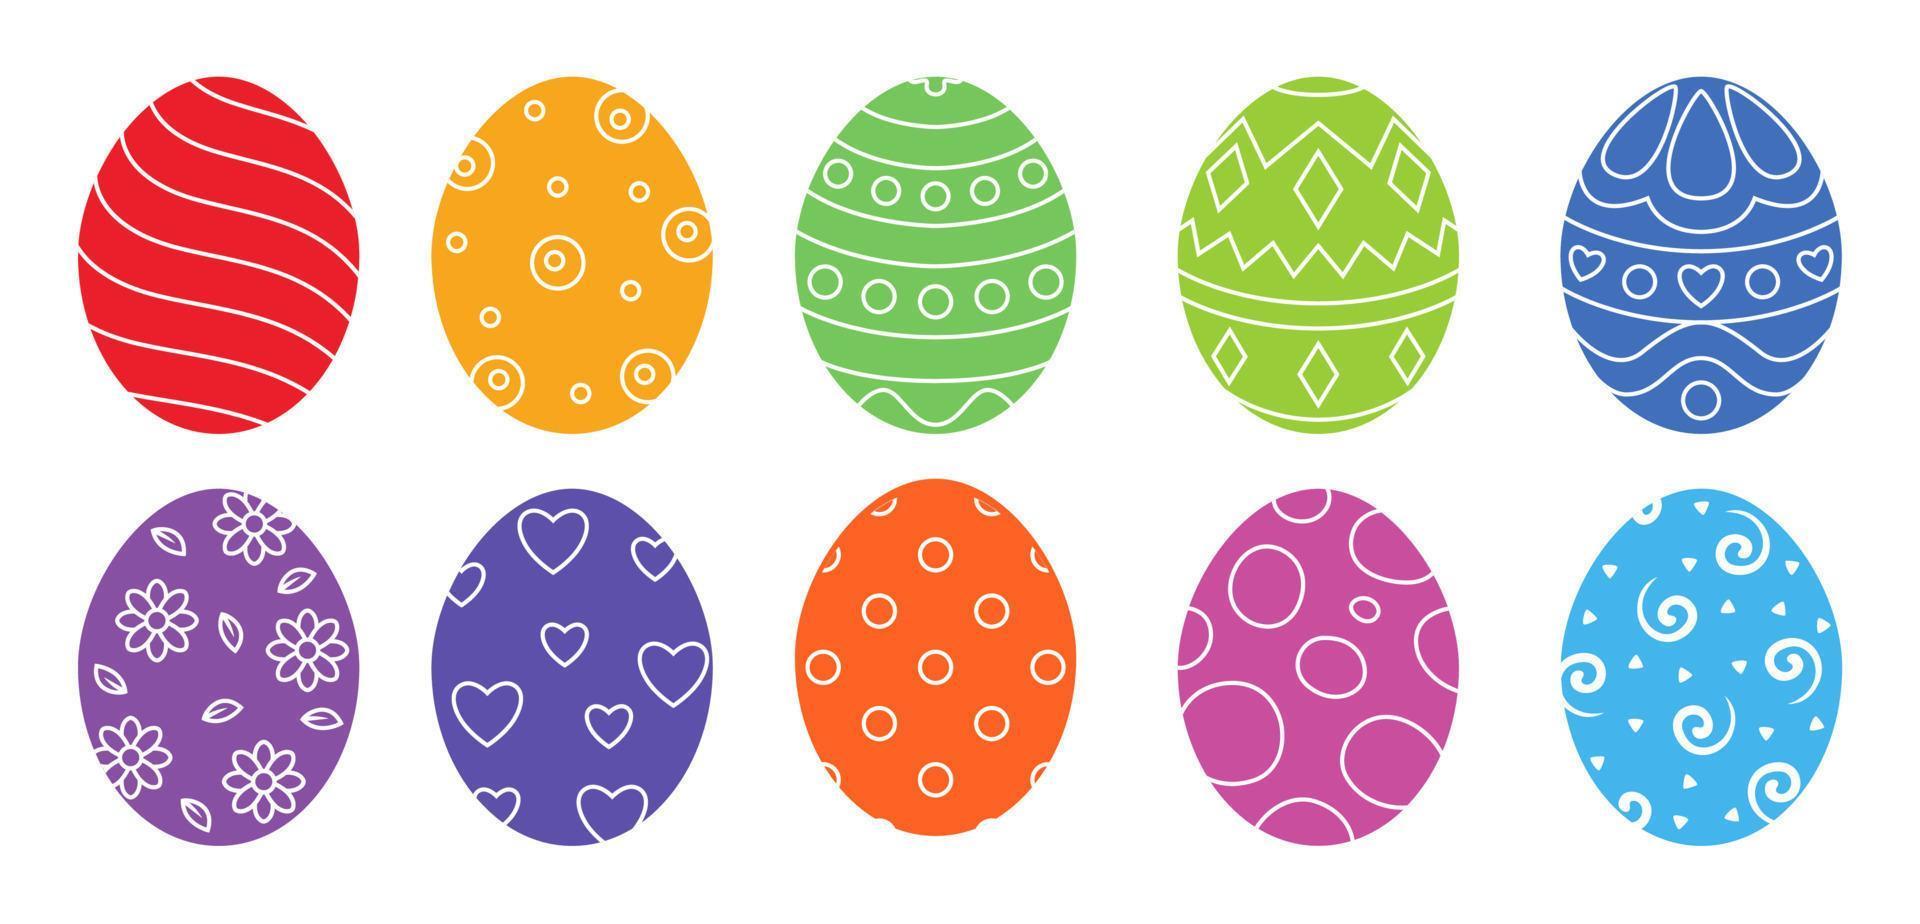 colección de huevos coloridos decorados ricos ornamentales de pascua dibujados a mano vector